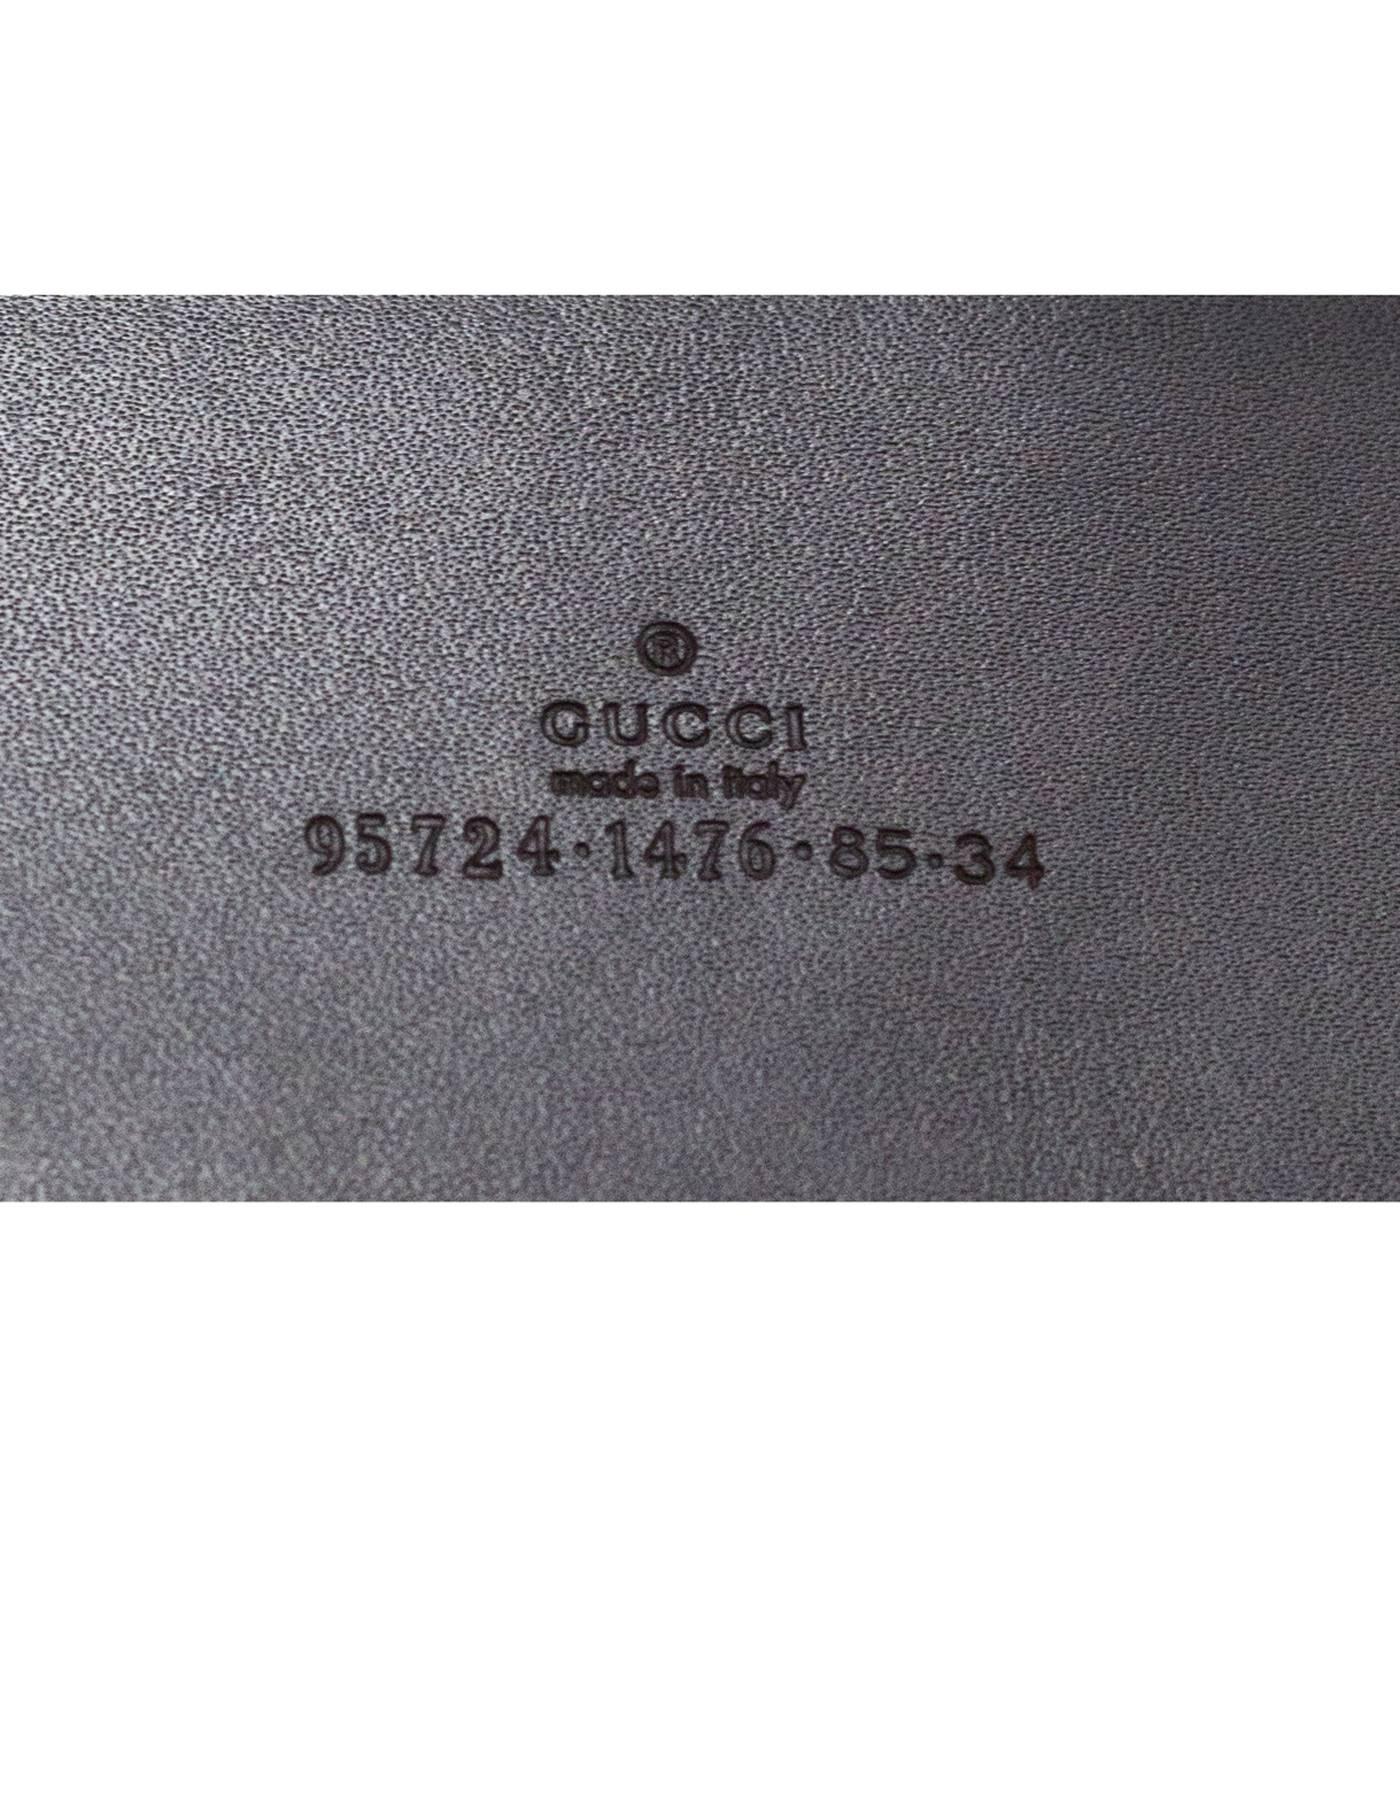 Gucci Brown Suede  Belt Sz 85 3